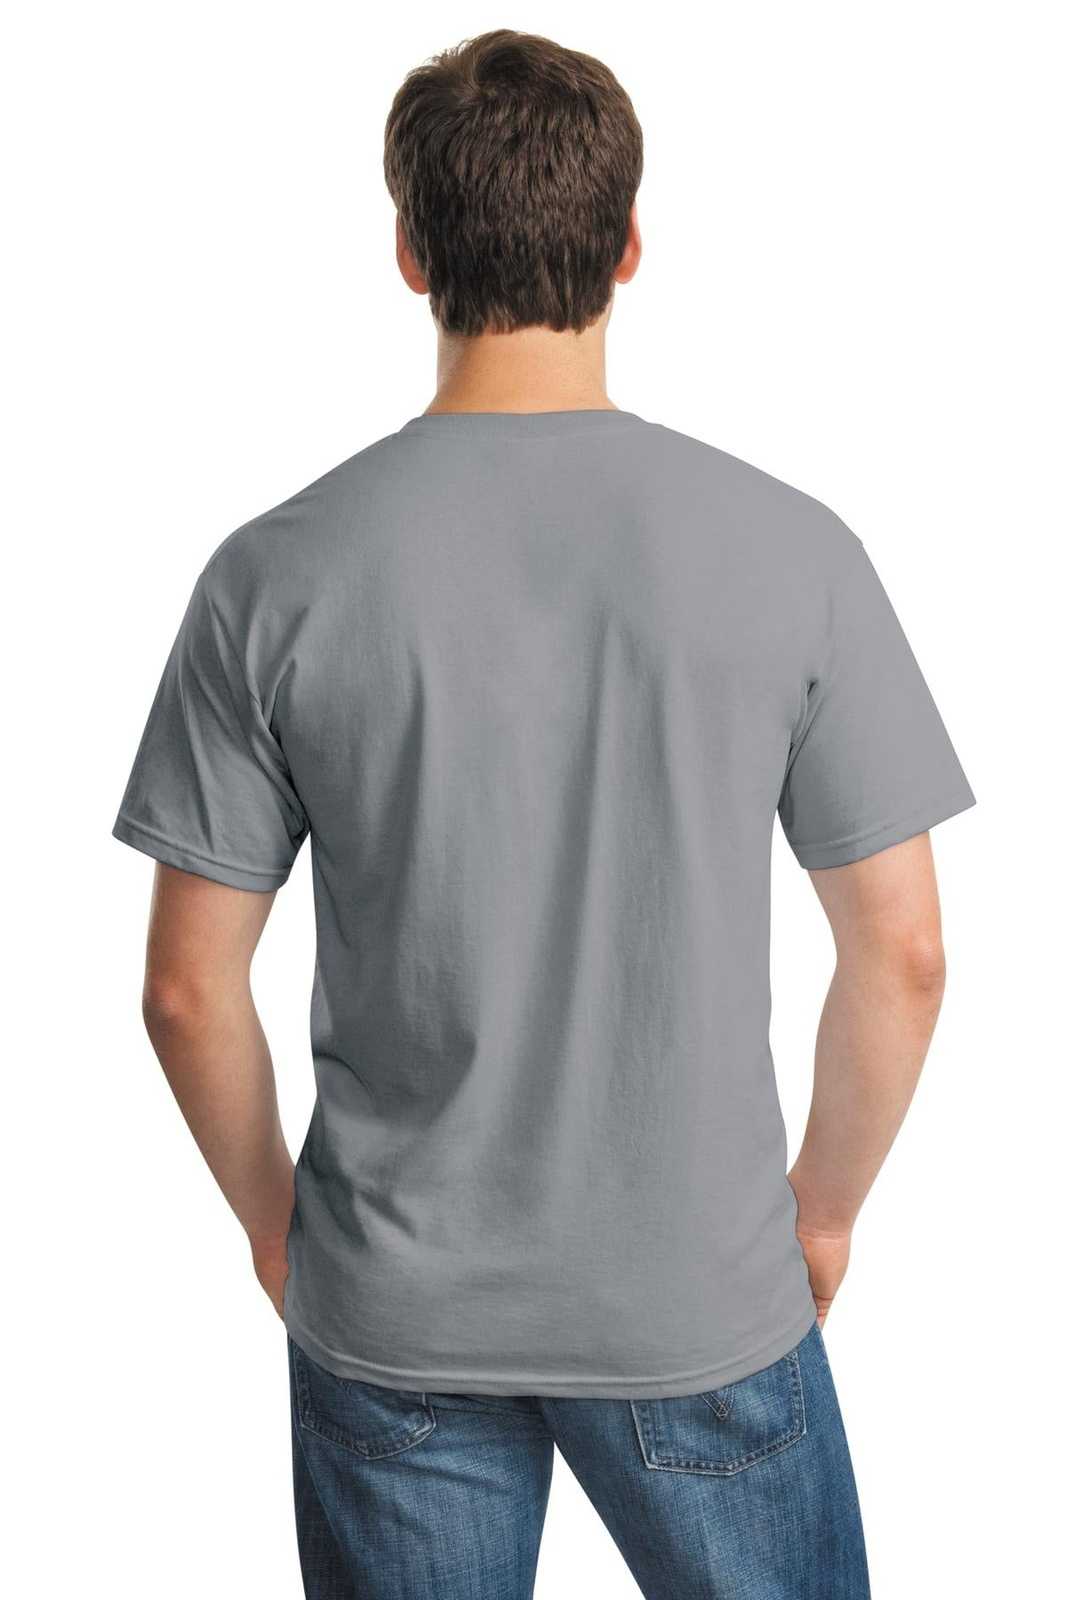 Gildan 5000 Heavy Cotton 100% Cotton T-Shirt - Gravel - HIT a Double